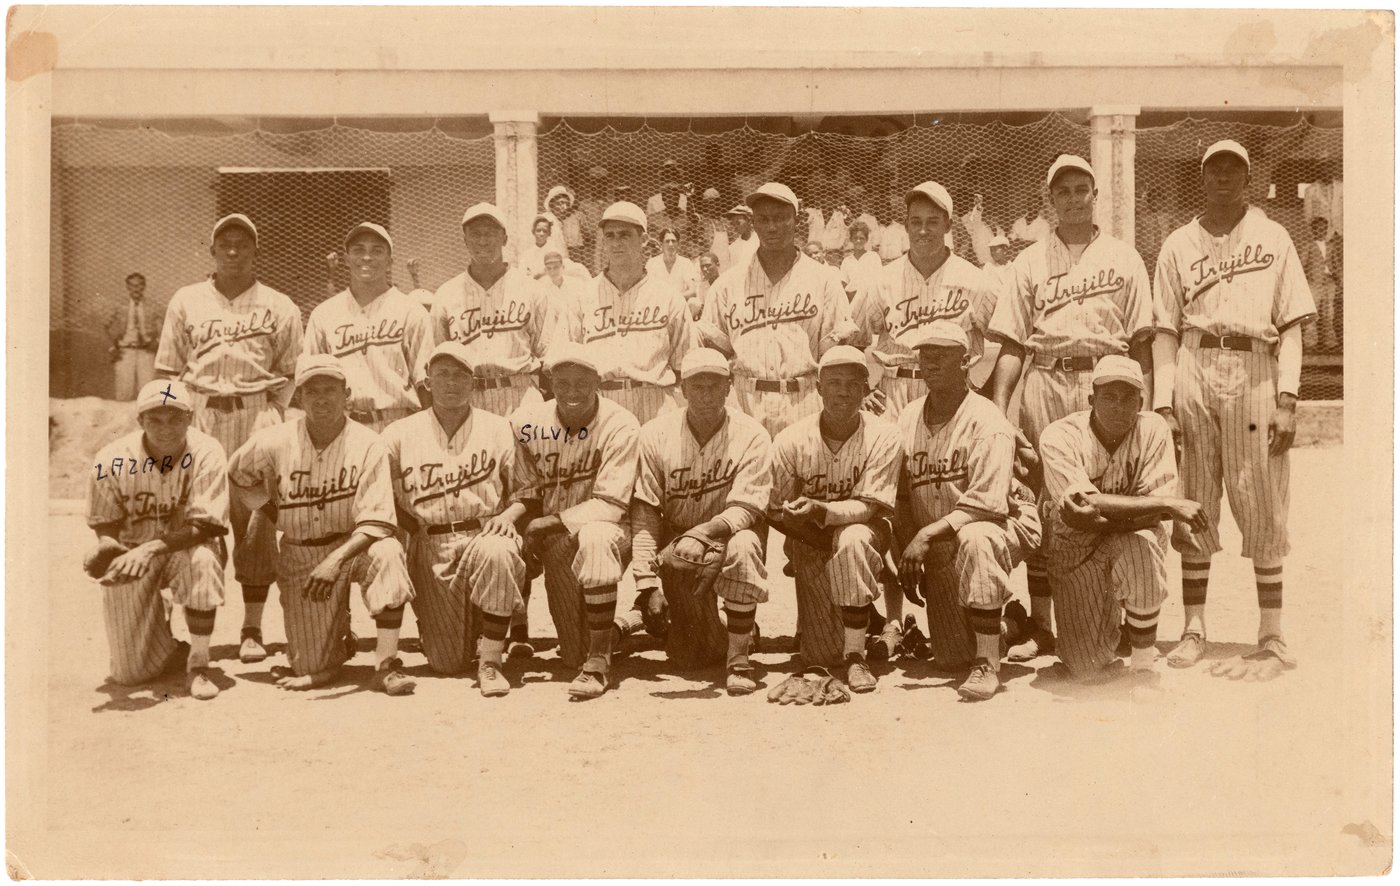 Team Photo of 1937 Dragones de Ciudad Trujillo